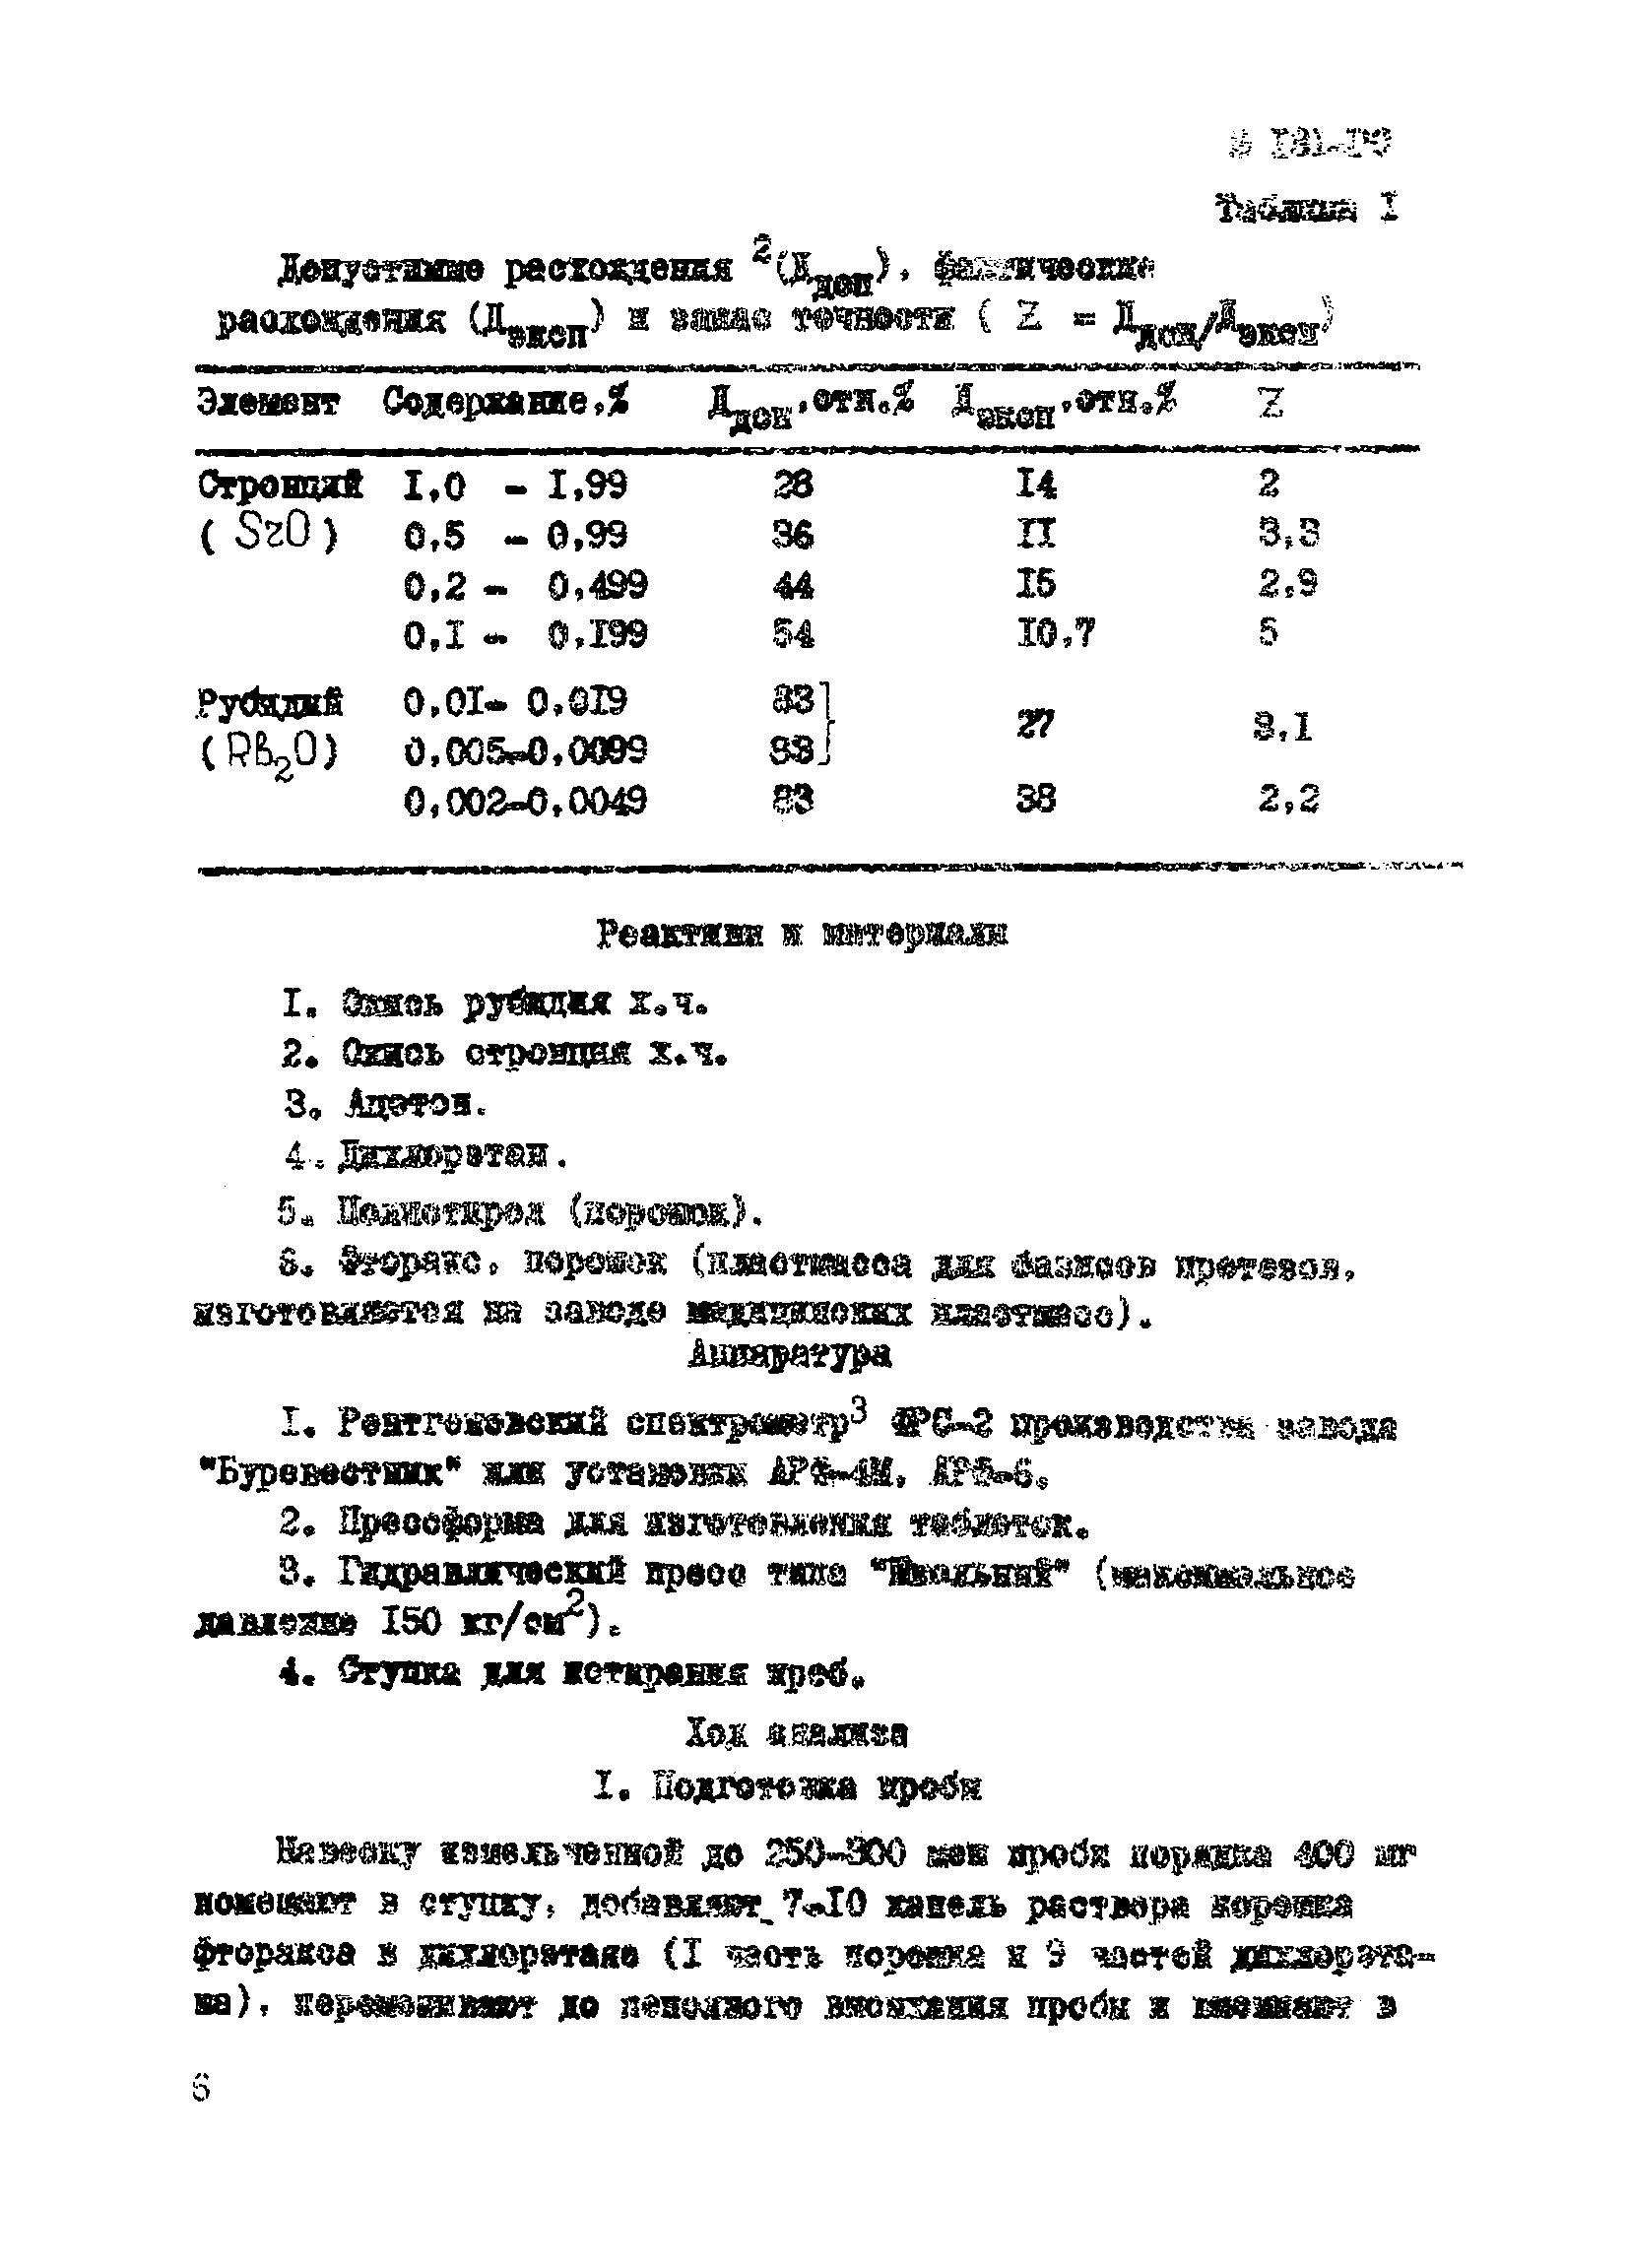 Инструкция НСАМ 181-РС